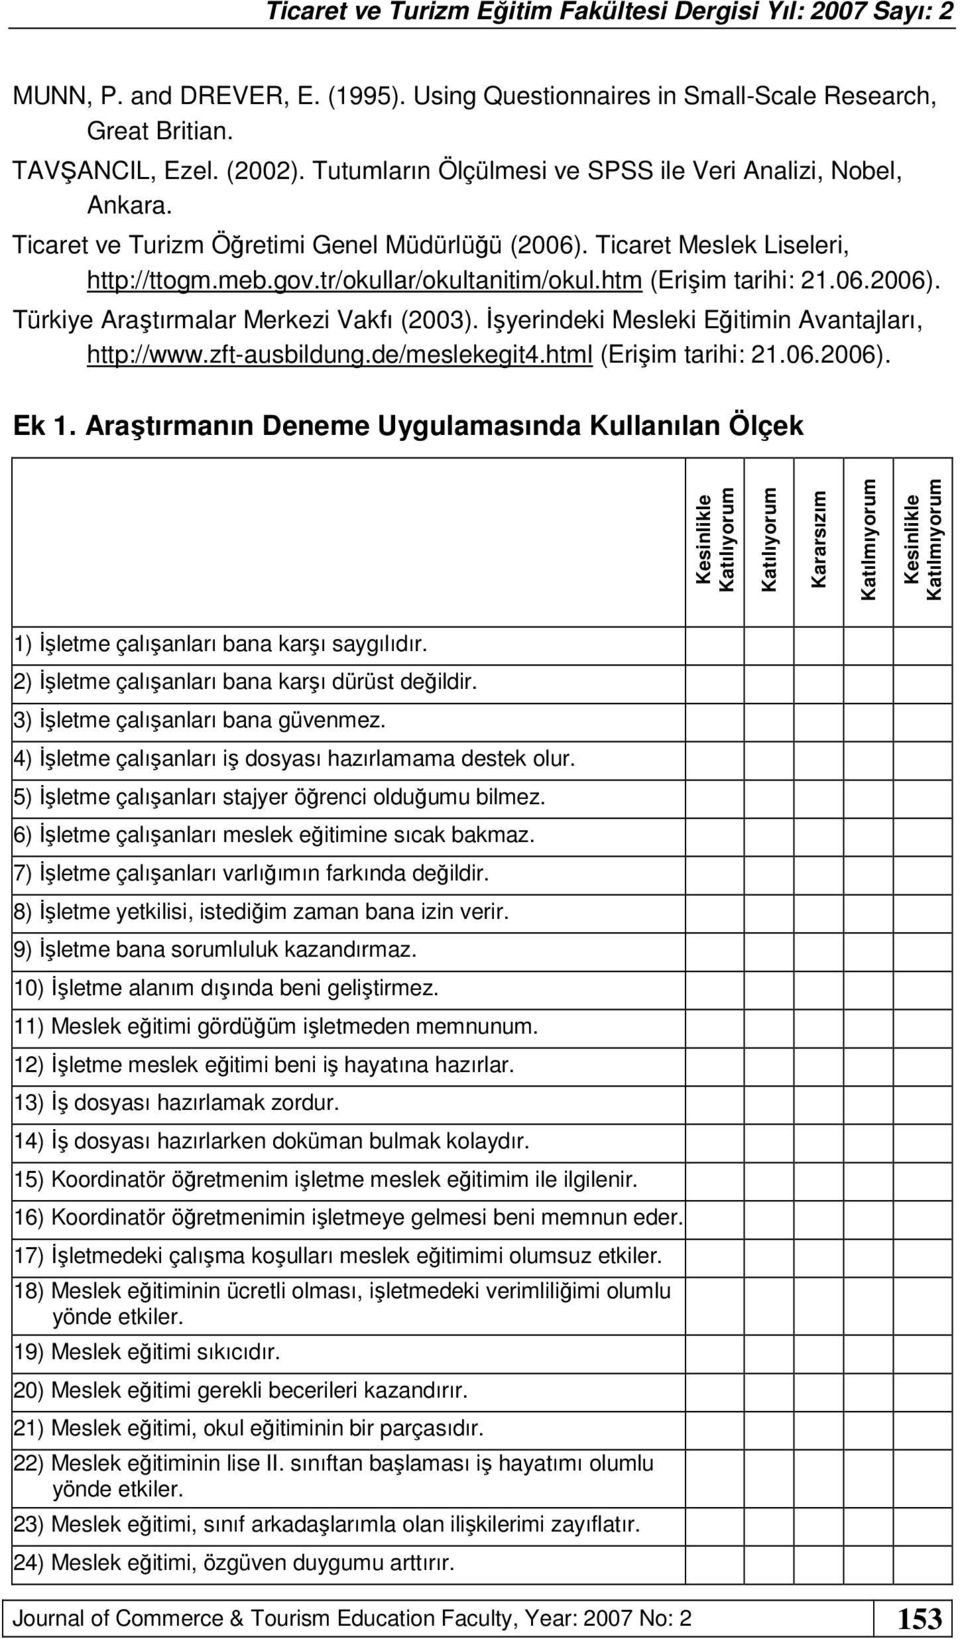 İşyerindeki Mesleki Eğitimin Avantajları, http://www.zft-ausbildung.de/meslekegit4.html (Erişim tarihi: 21.06.2006). Ek 1.